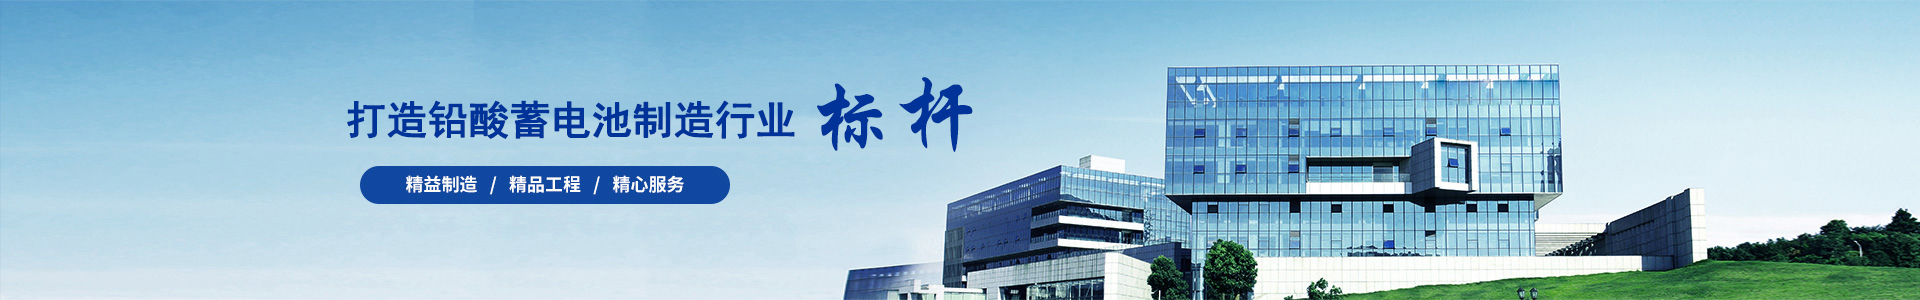 天力蓄电池-天力电池-德国天力集团(中国)有限公司官网